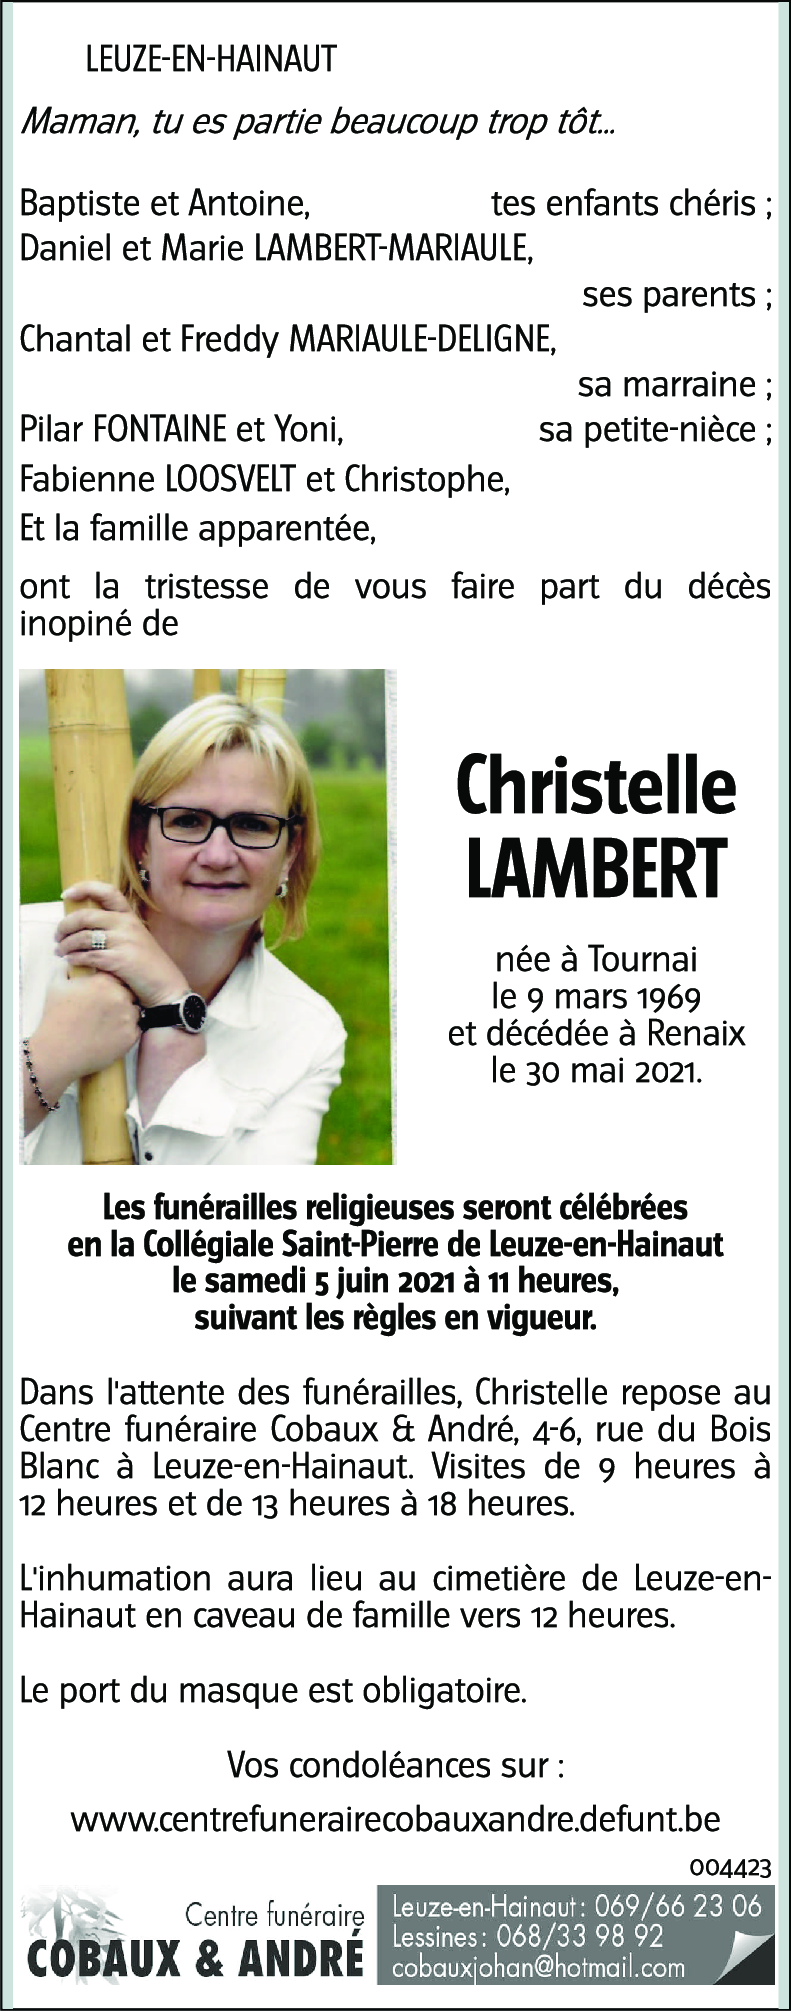 Christelle Lambert